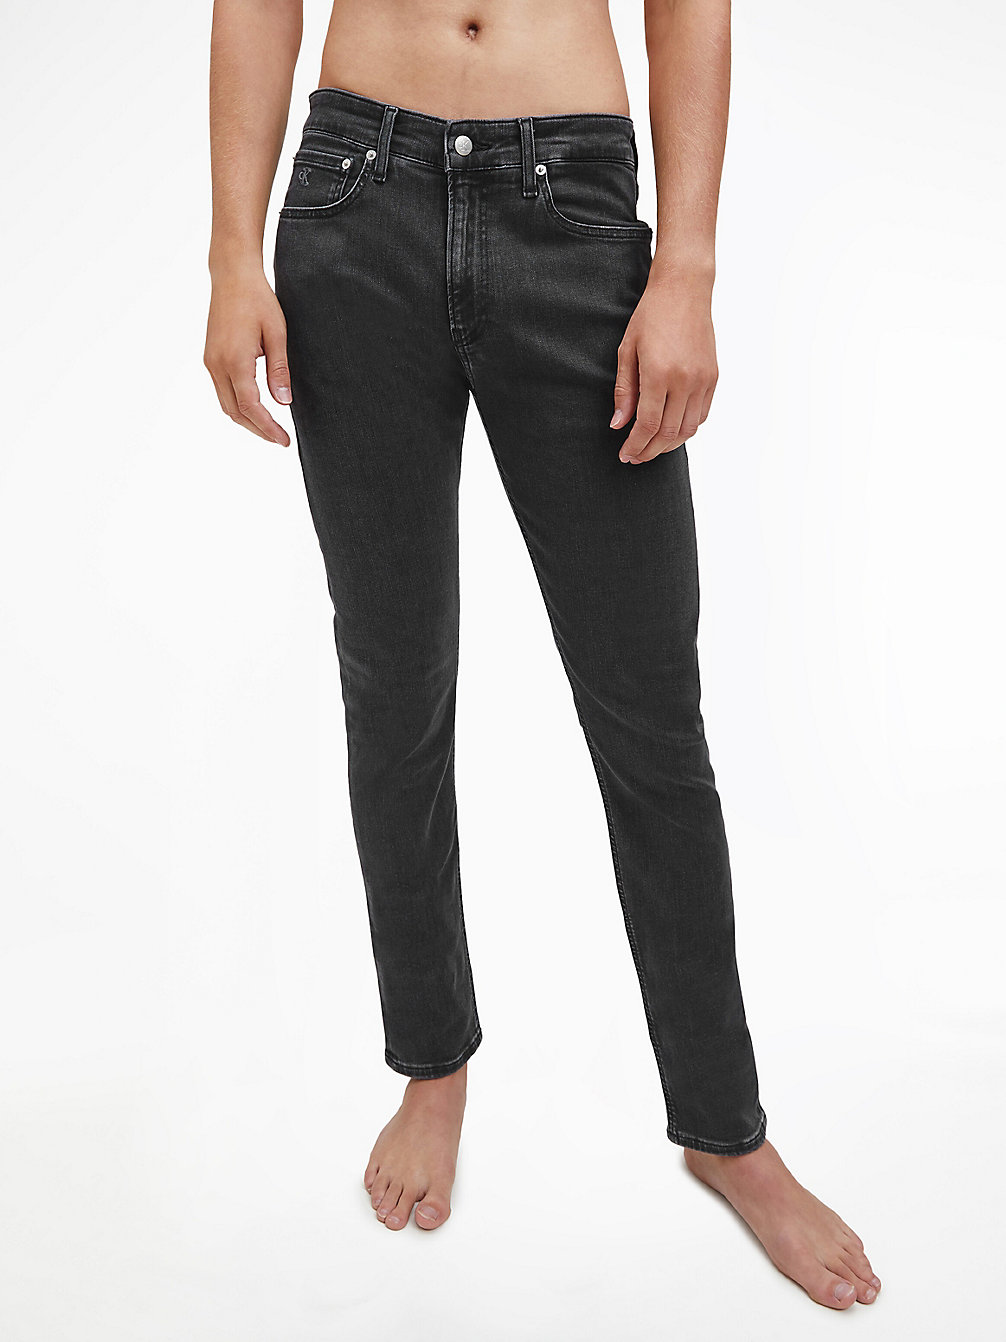 ZZ009 GREY Skinny Jeans undefined Herren Calvin Klein